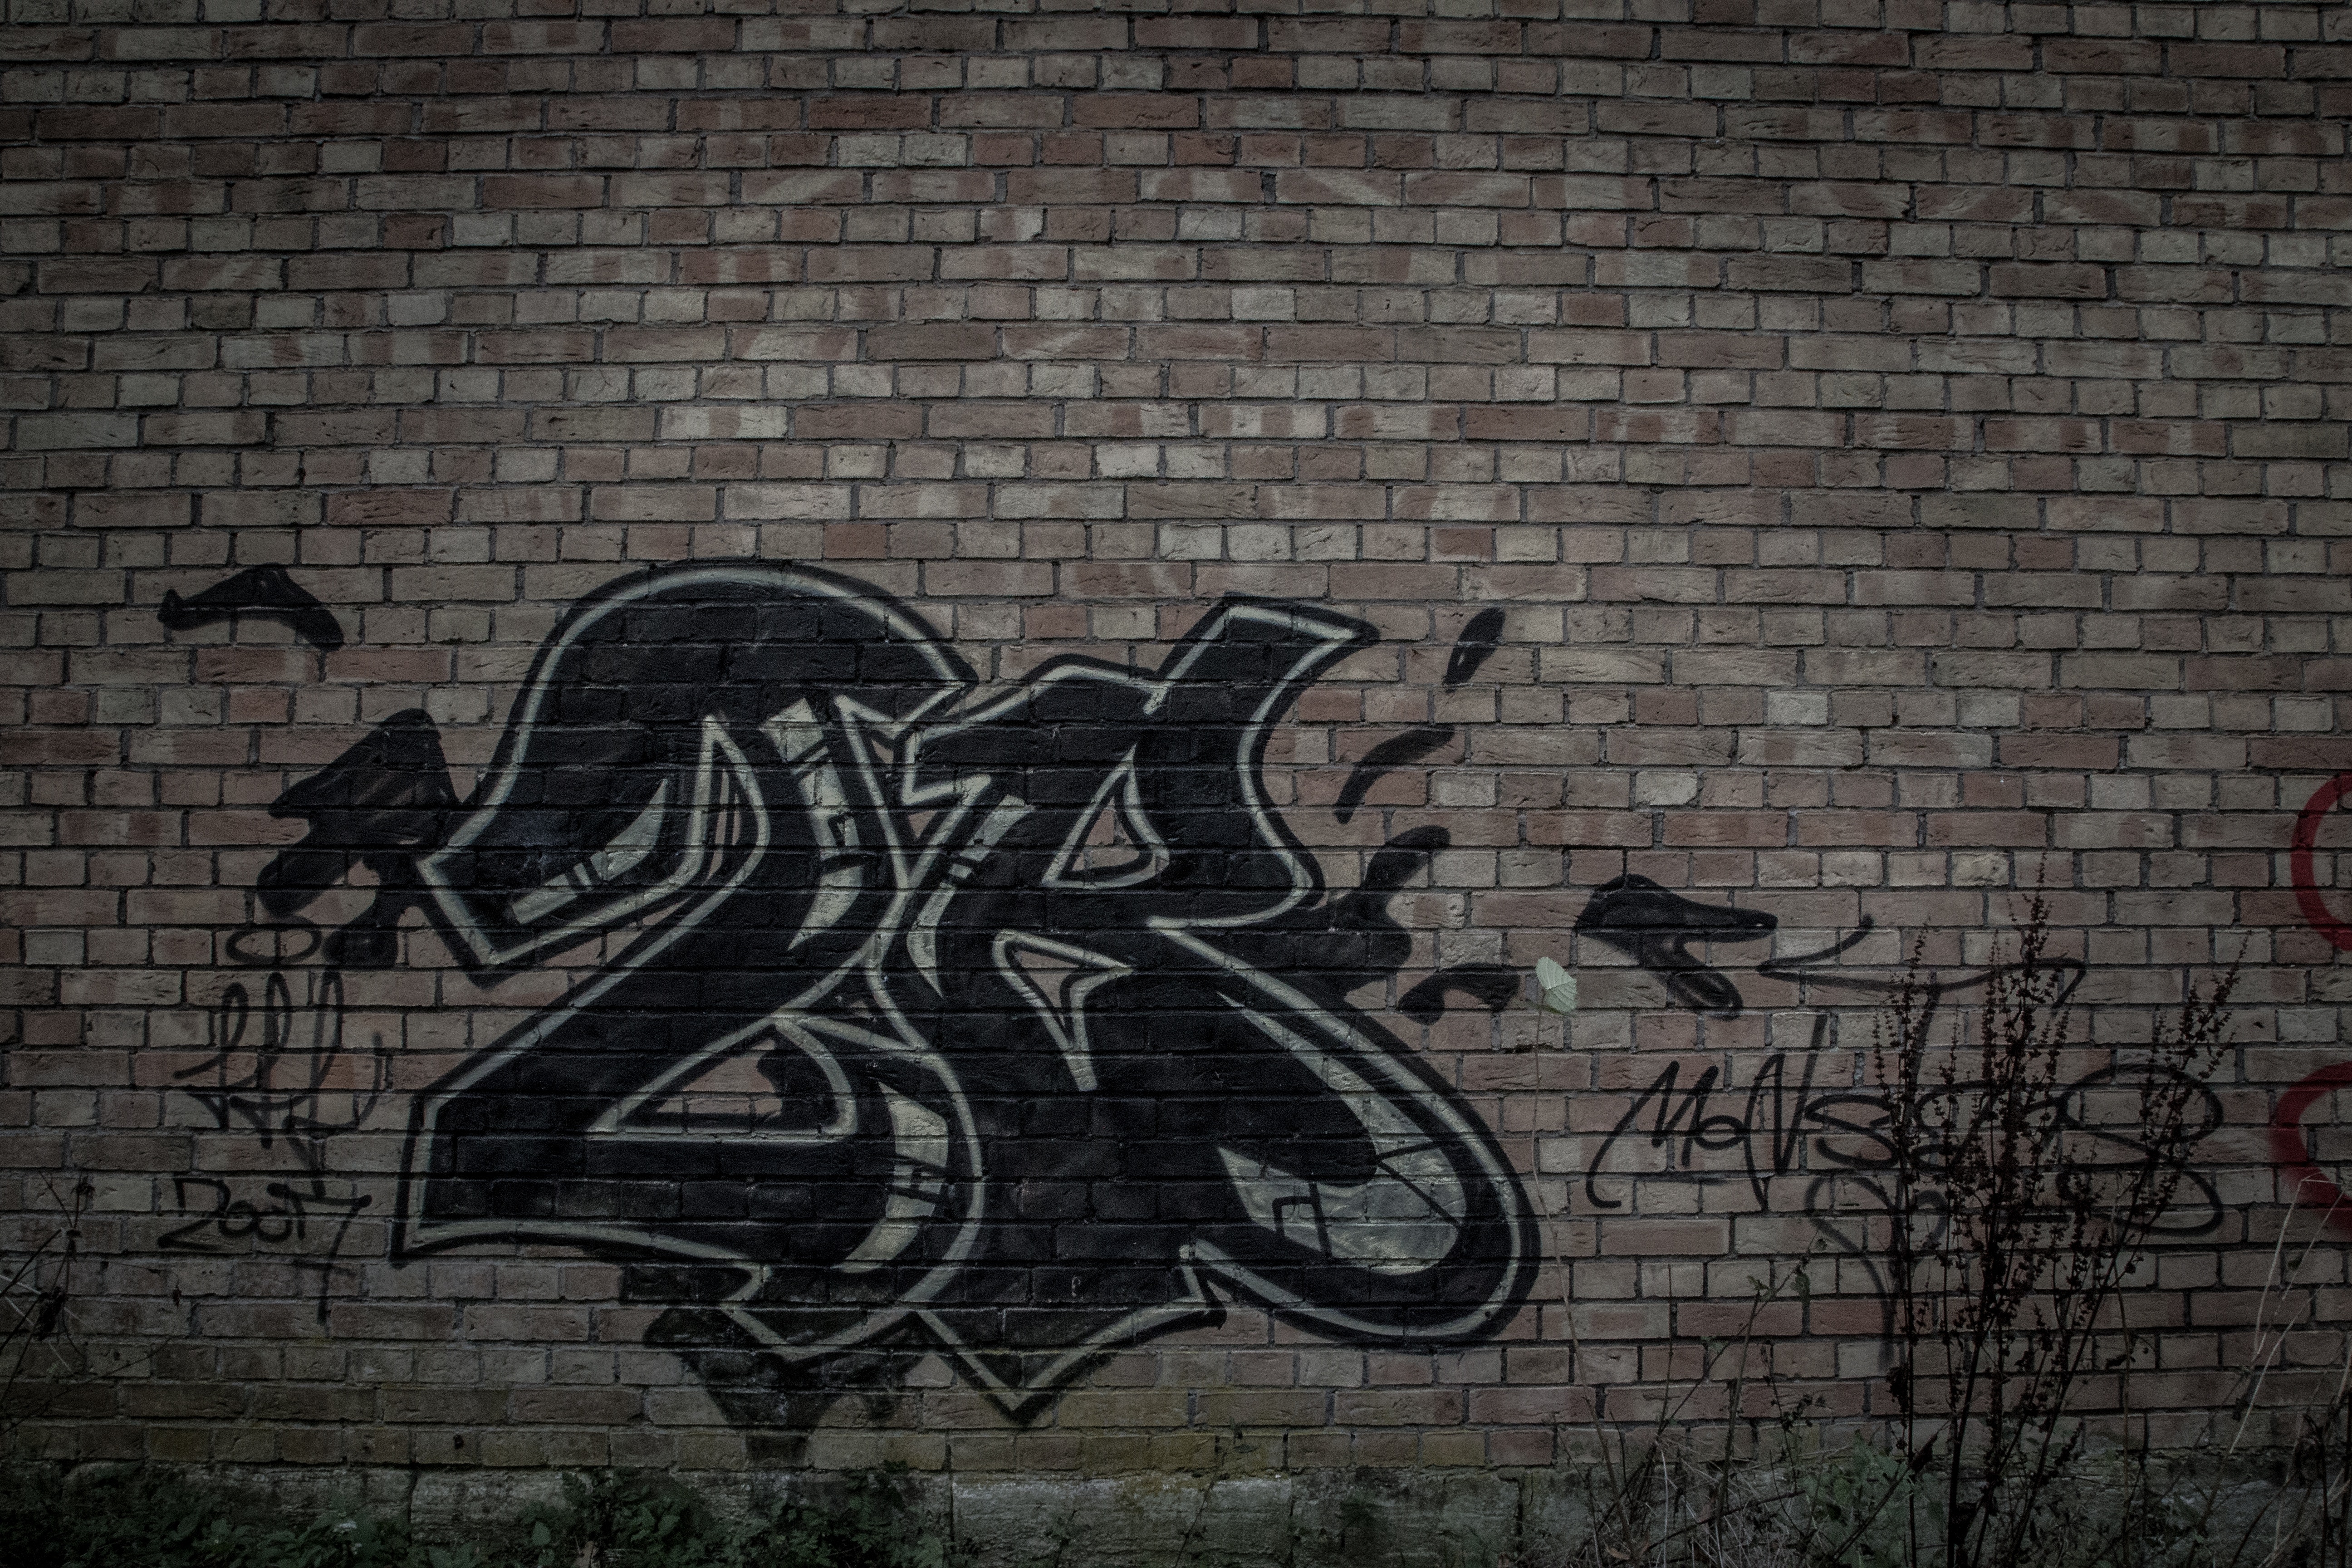 Black Brick Wall With Graffiti - HD Wallpaper 